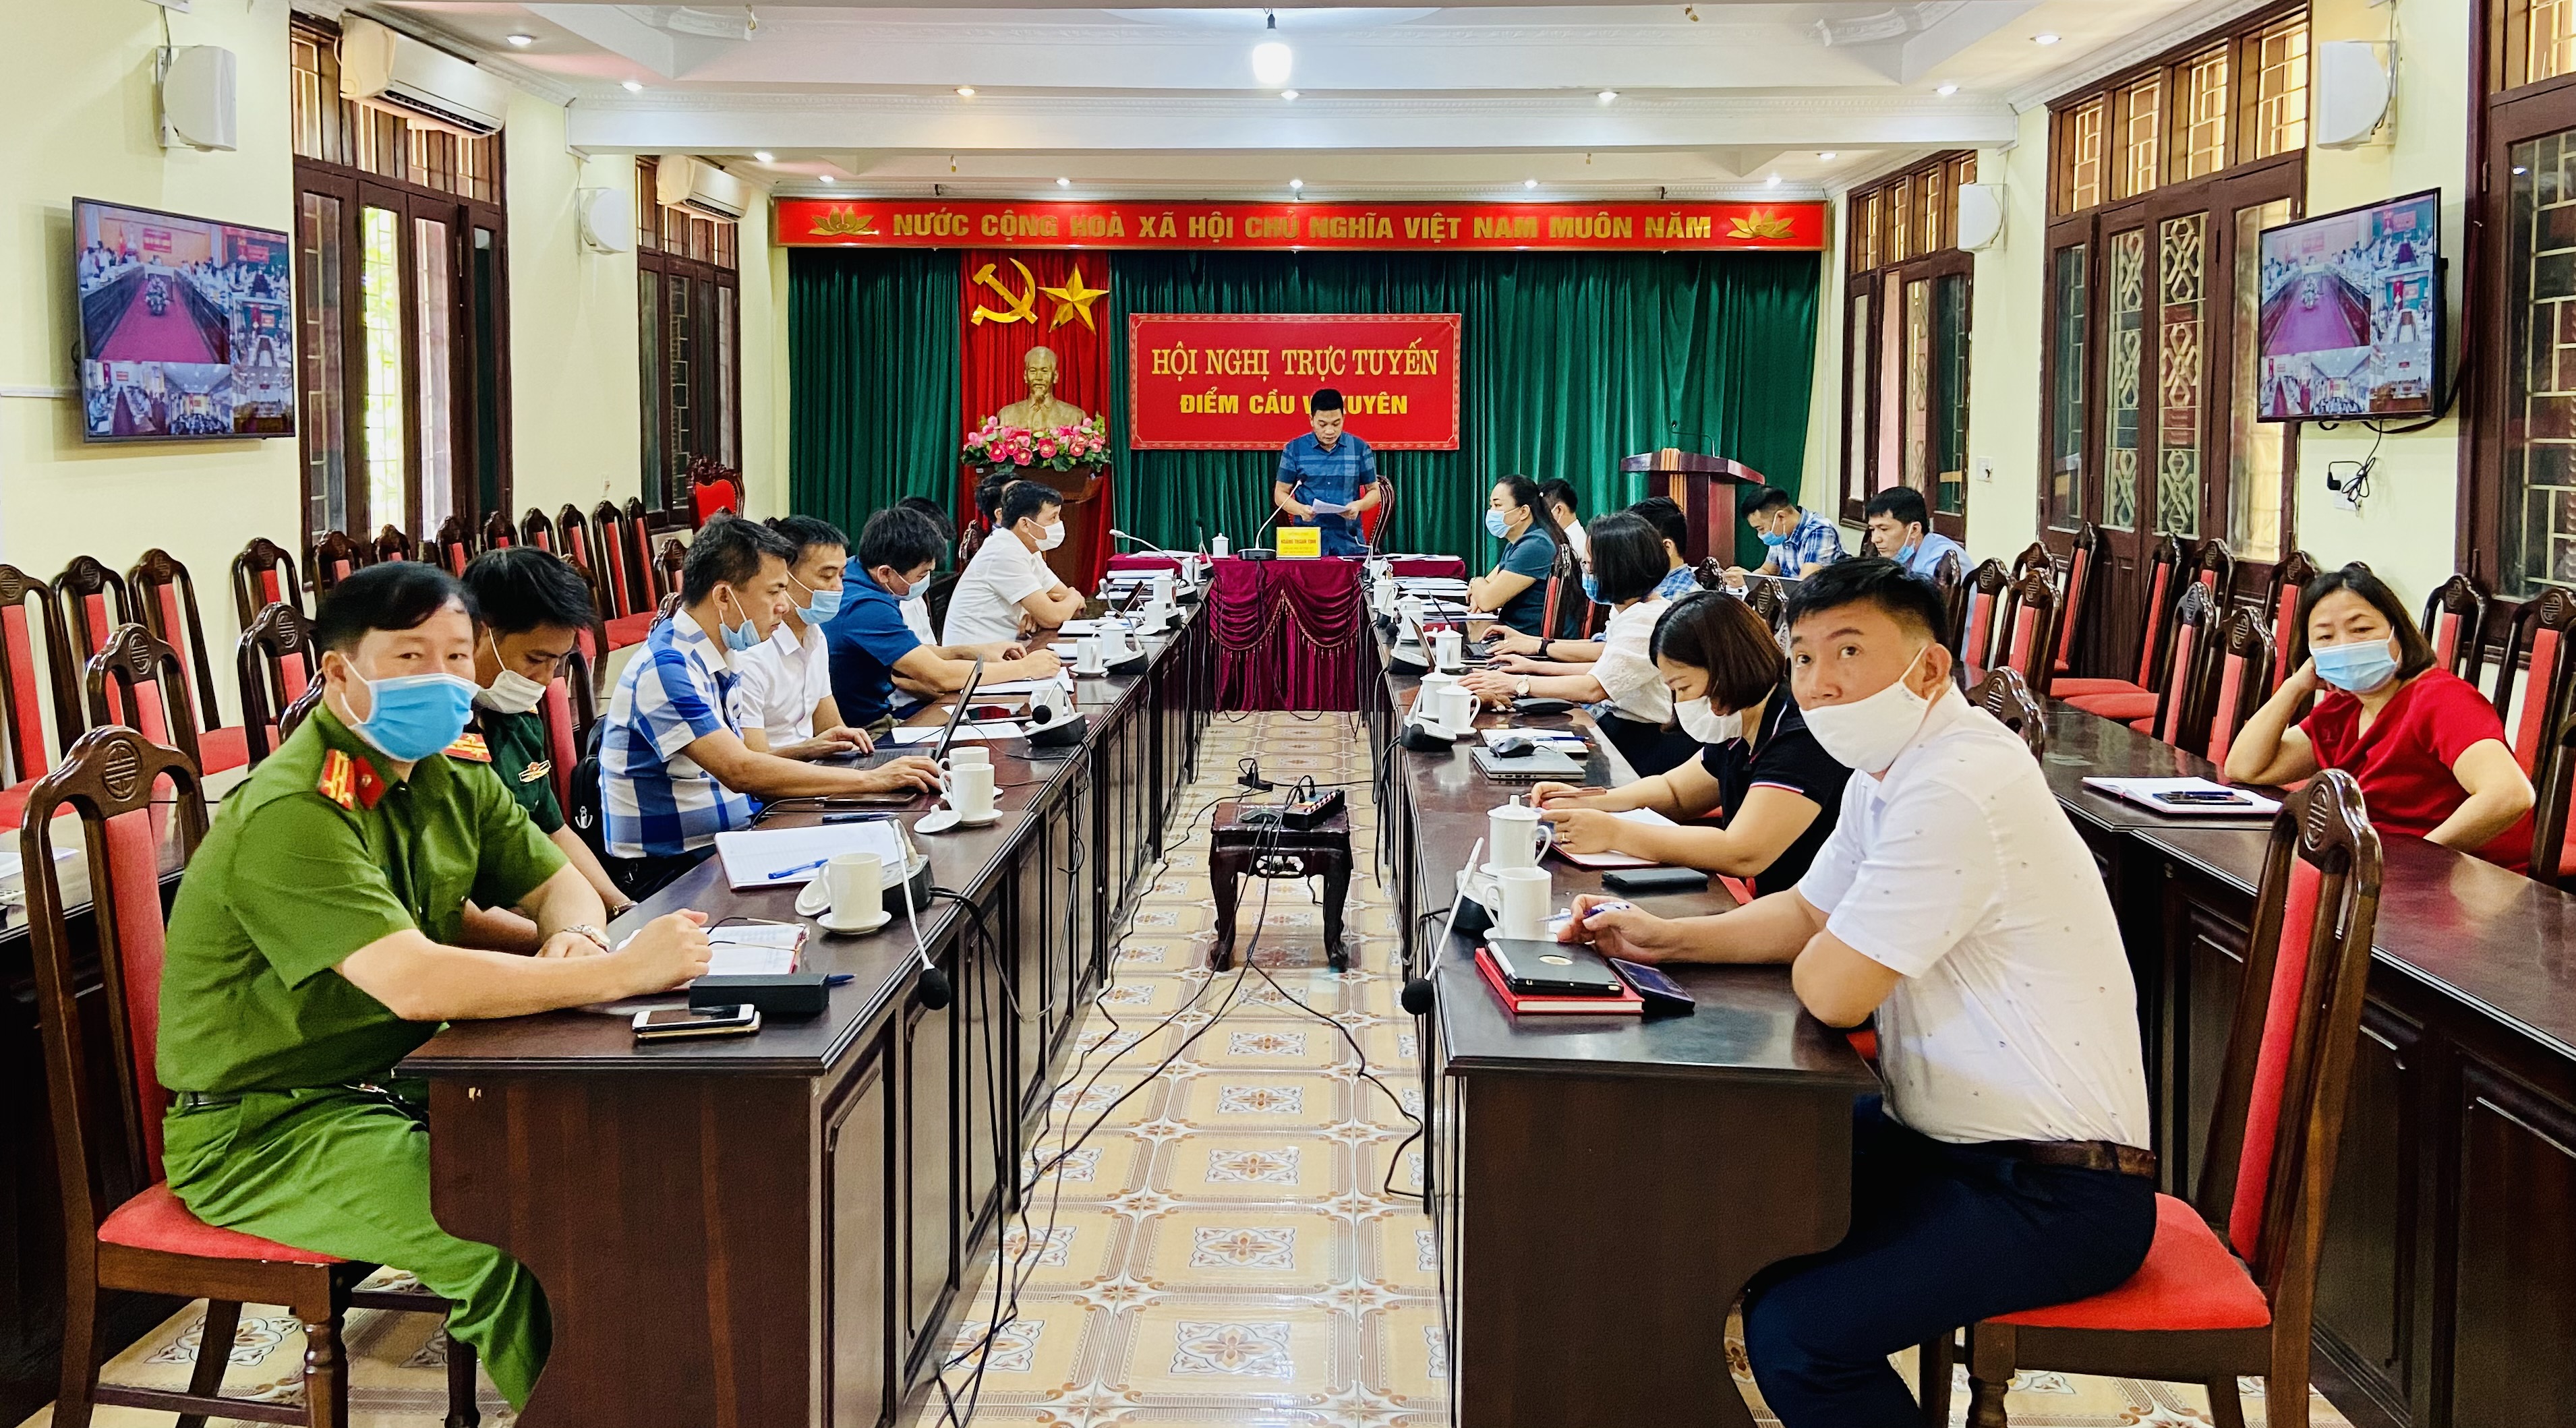 Vị Xuyên tham gia hội nghị trực tuyến UBND tỉnh họp phiên tháng 6